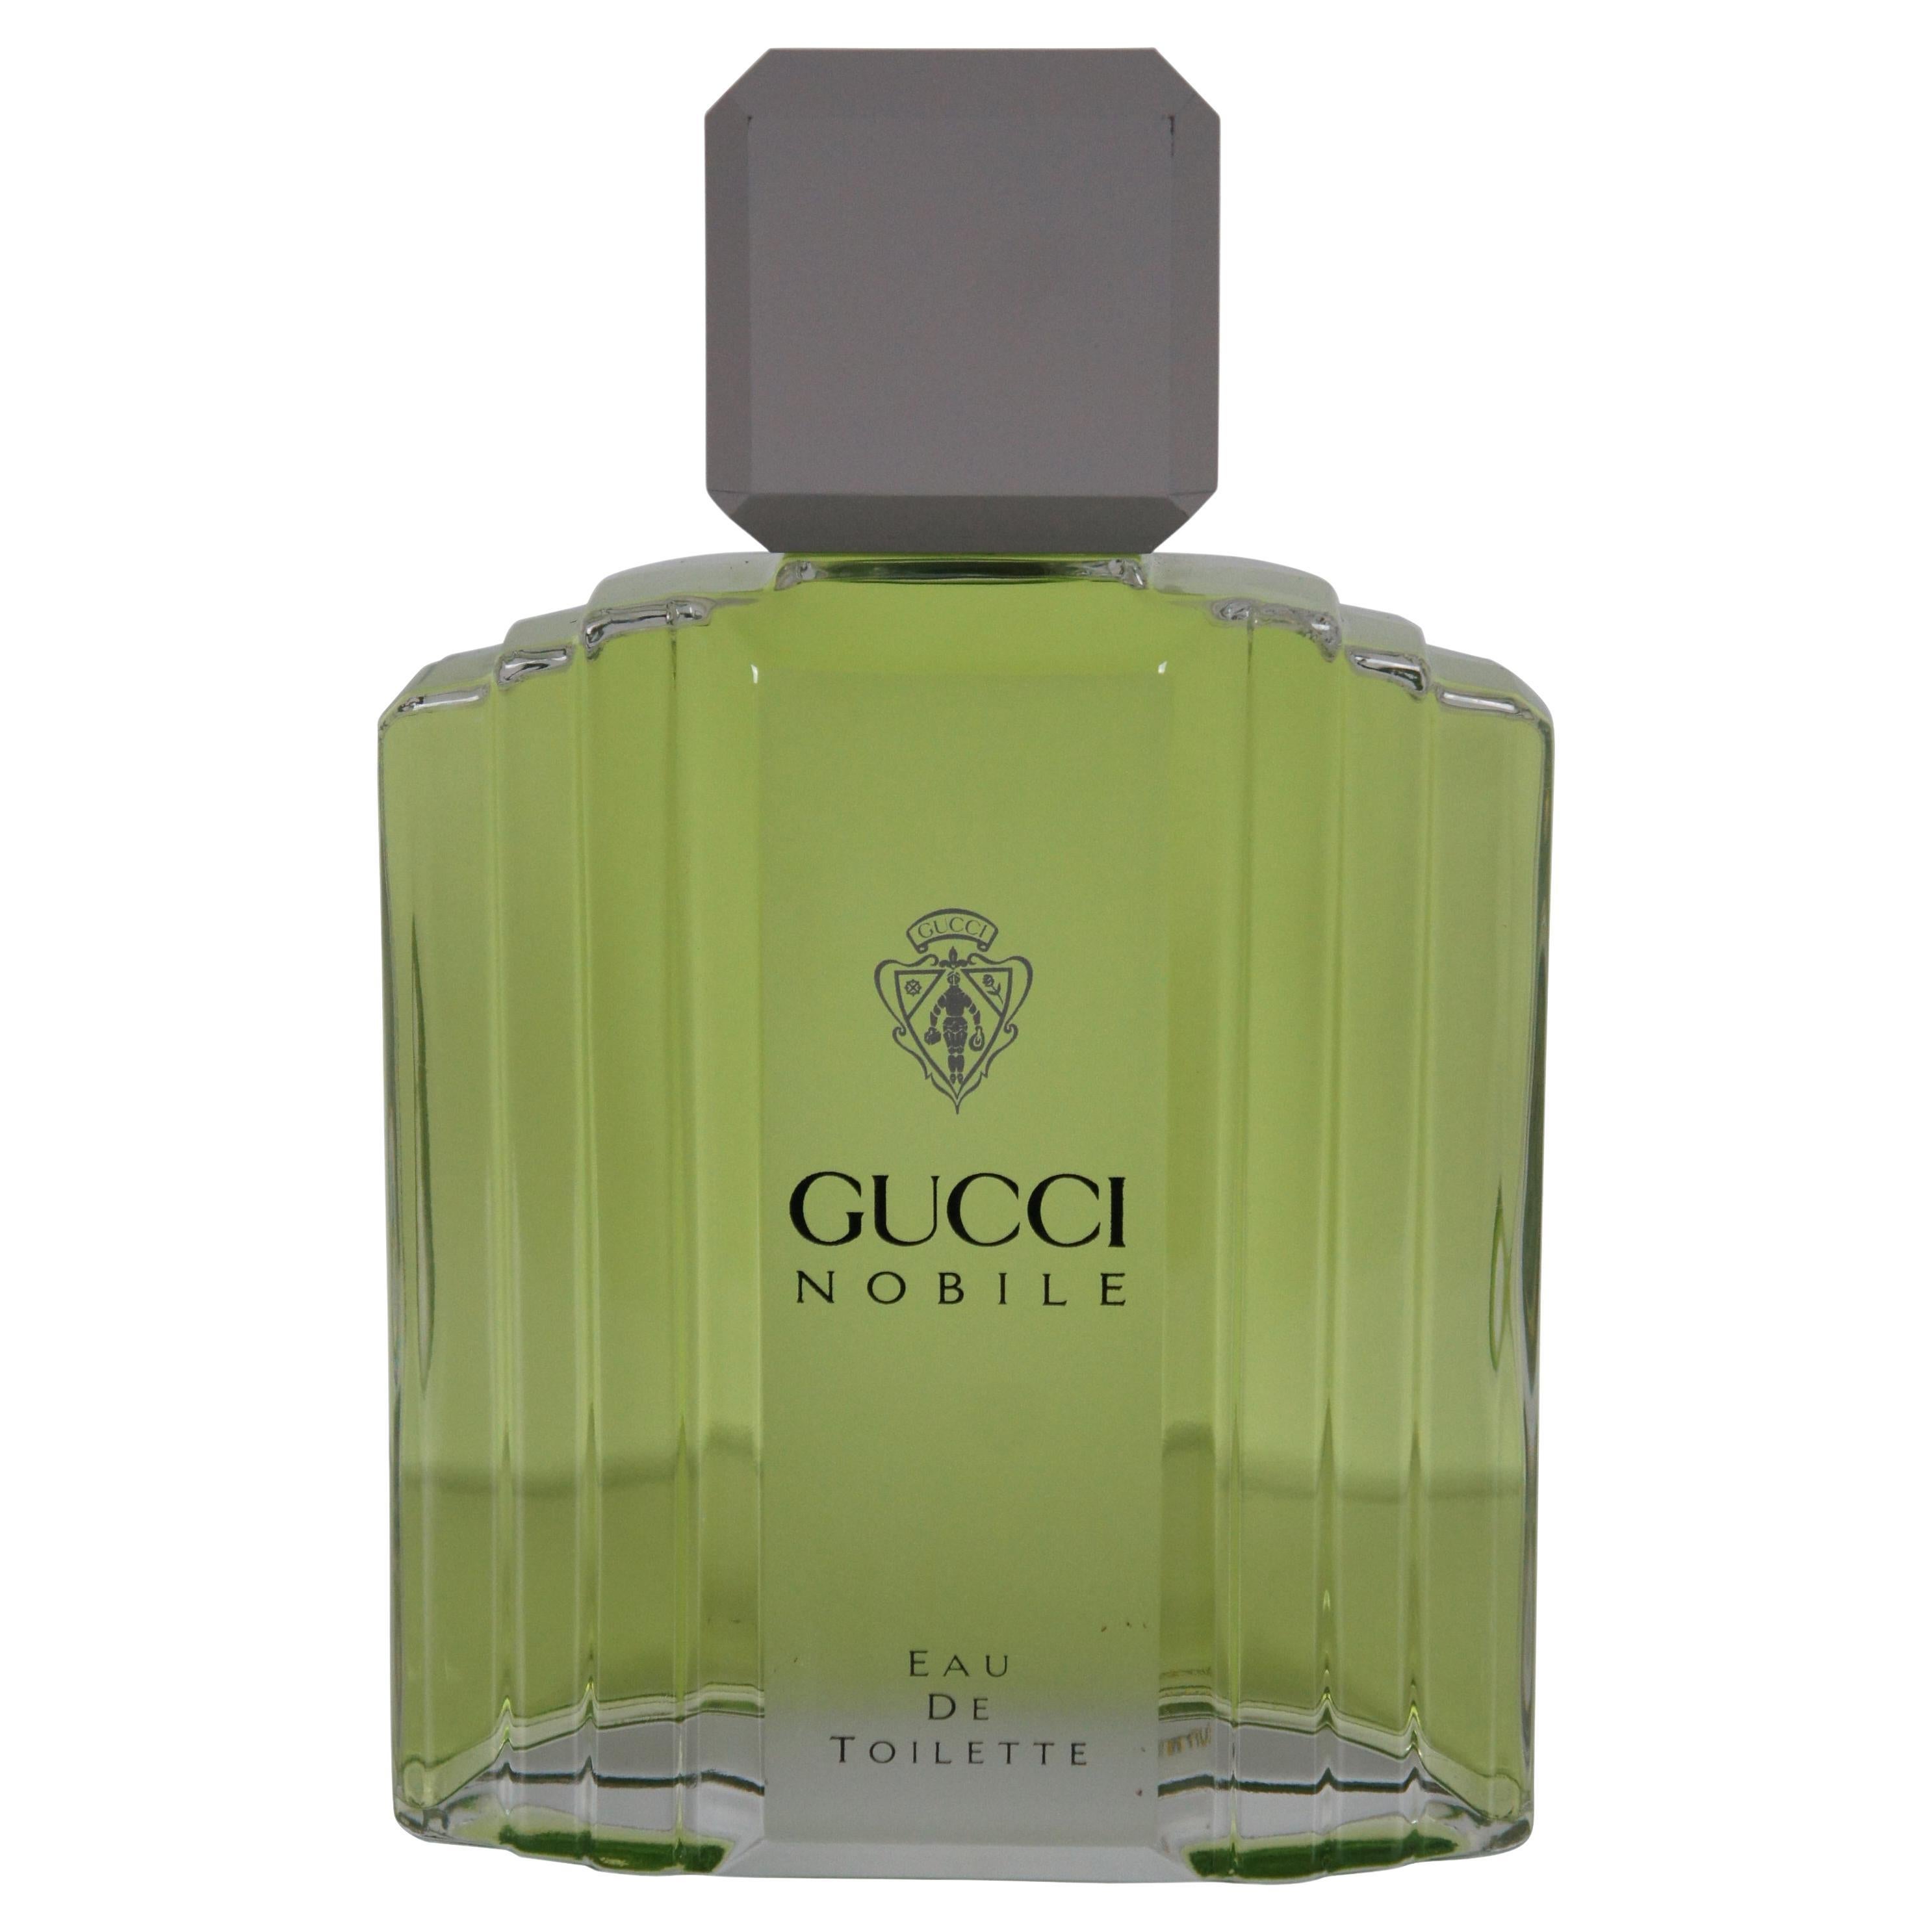 Gucci Nobile Eau Toilette Factice Dummy Cologne Parfümflasche Verkaufsraum Display im Angebot